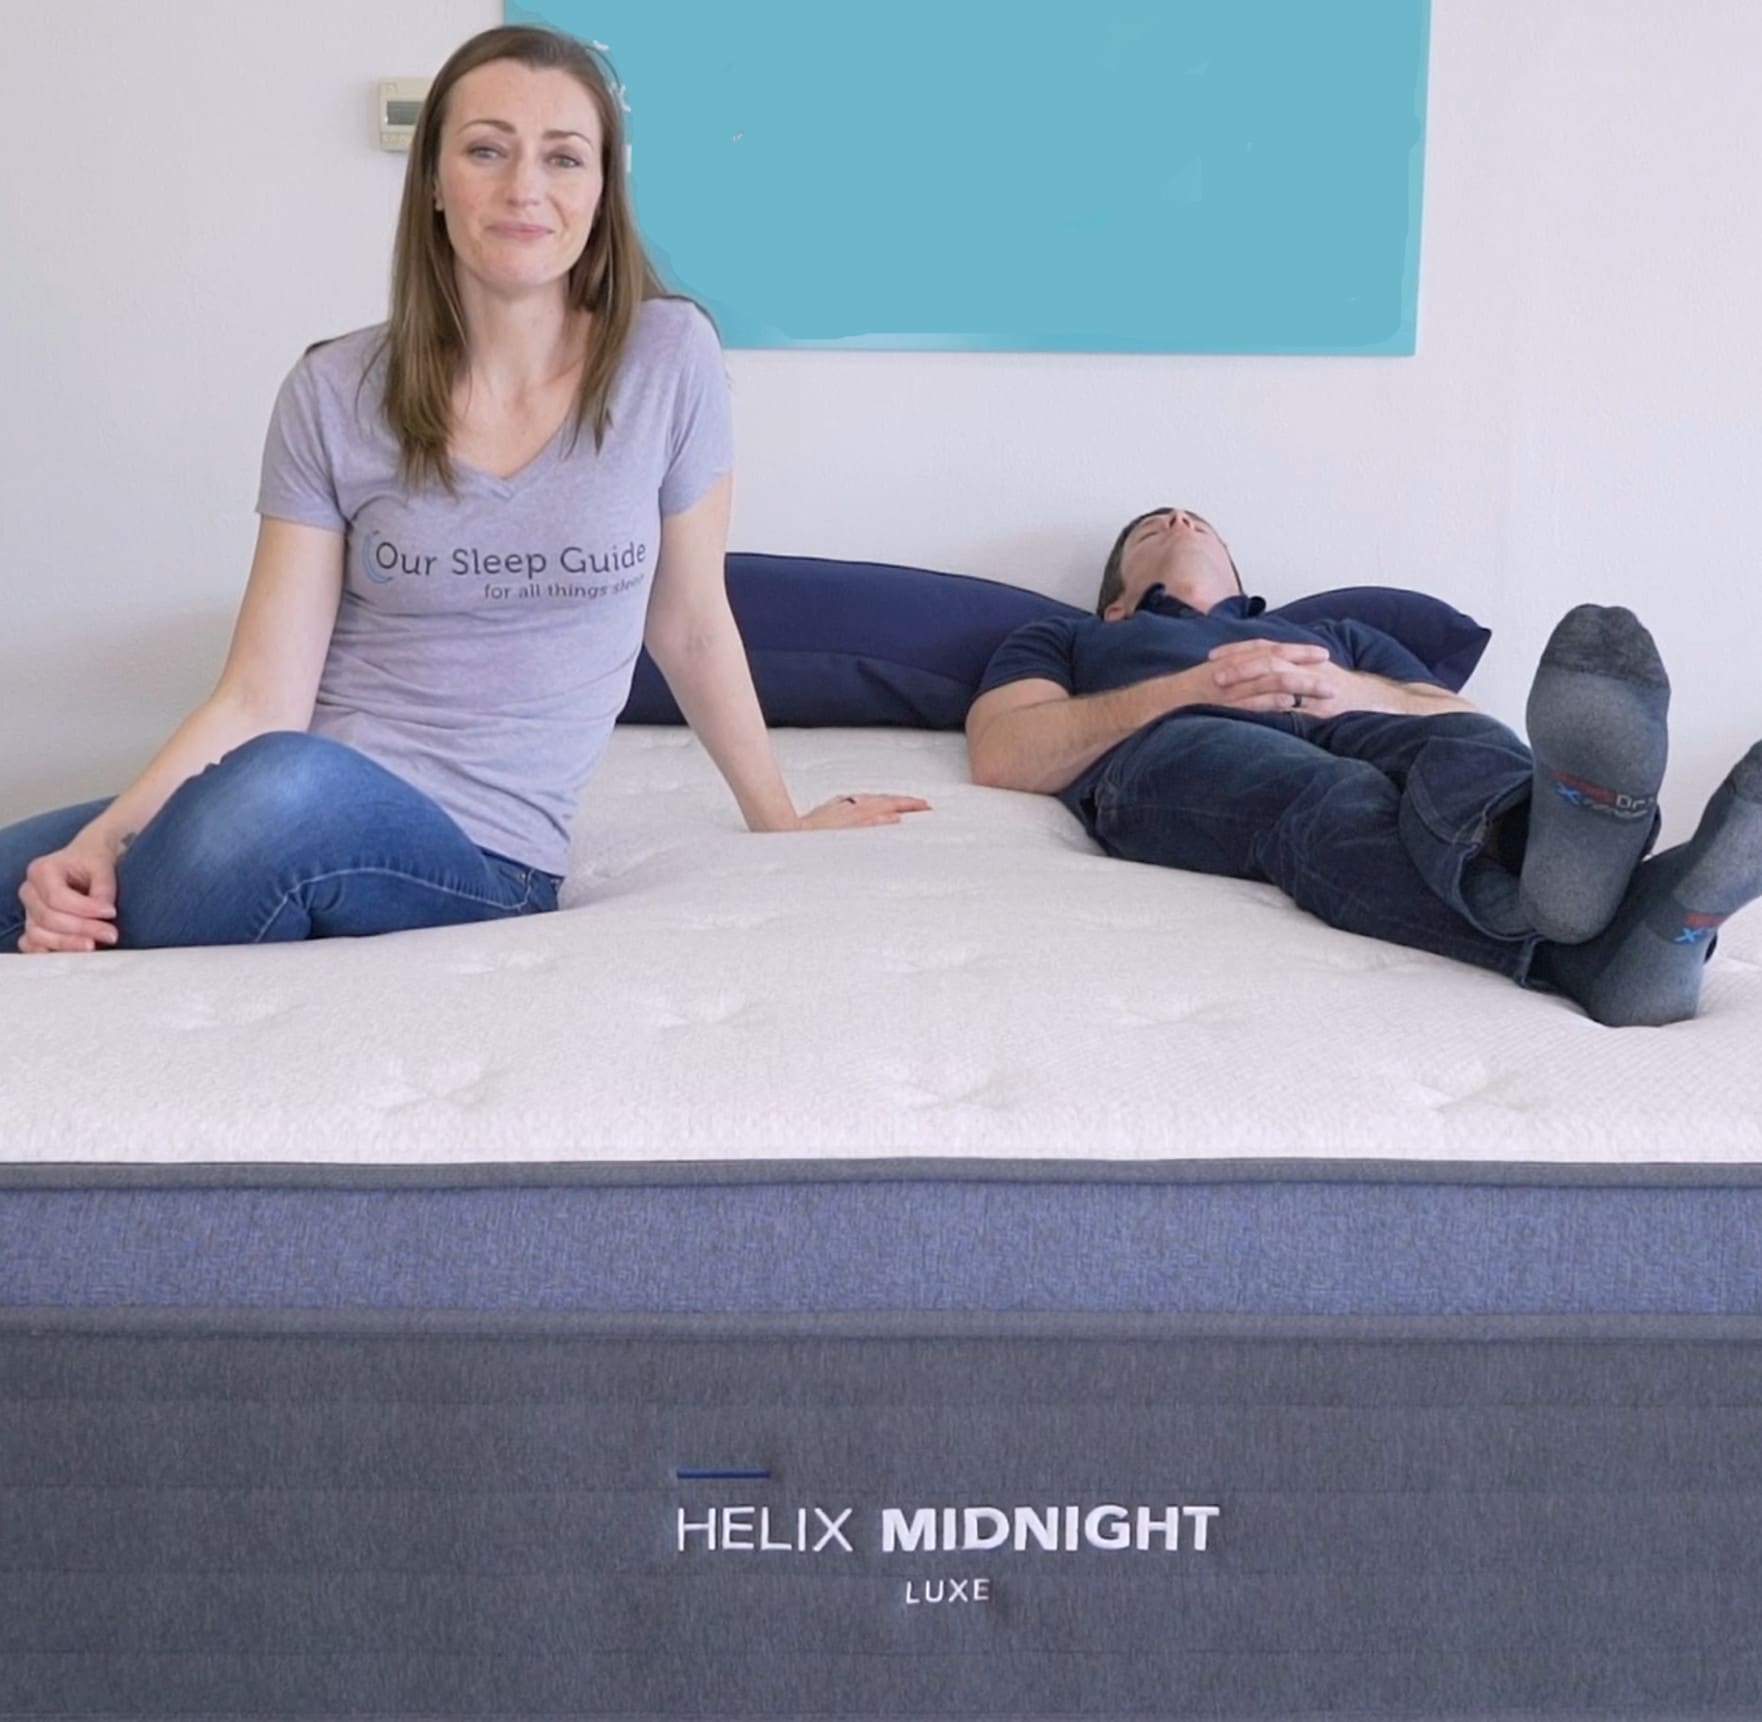 helix midnight mattress review